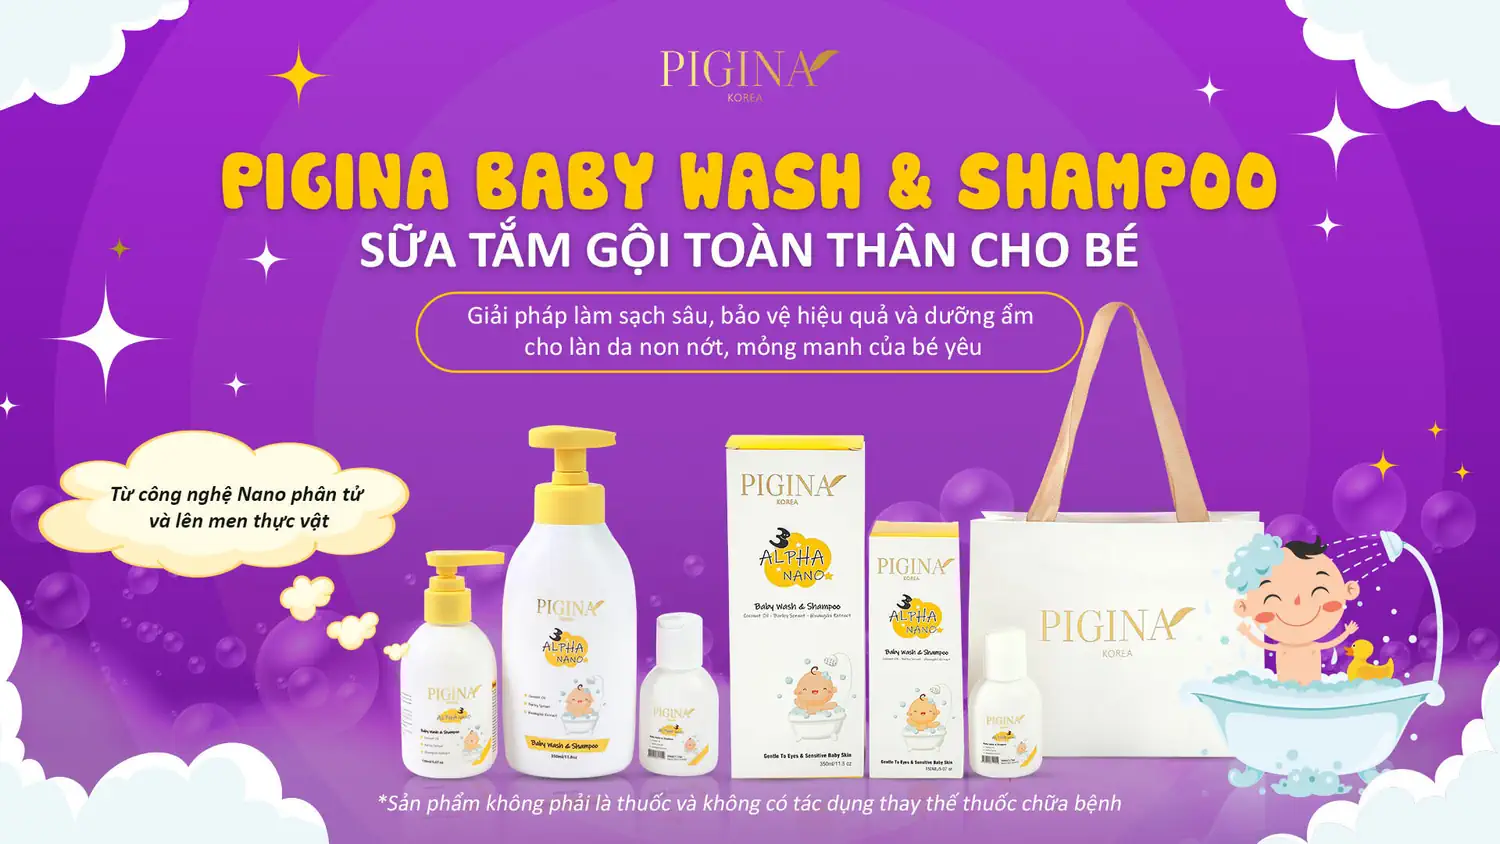 Thương hiệu Pigina - sản phẩm chăm sóc toàn diện sức khỏe và sắc đẹp khu vực nhạy cảm của phái nữ và làn da non nớt của trẻ em - Droppii Shops